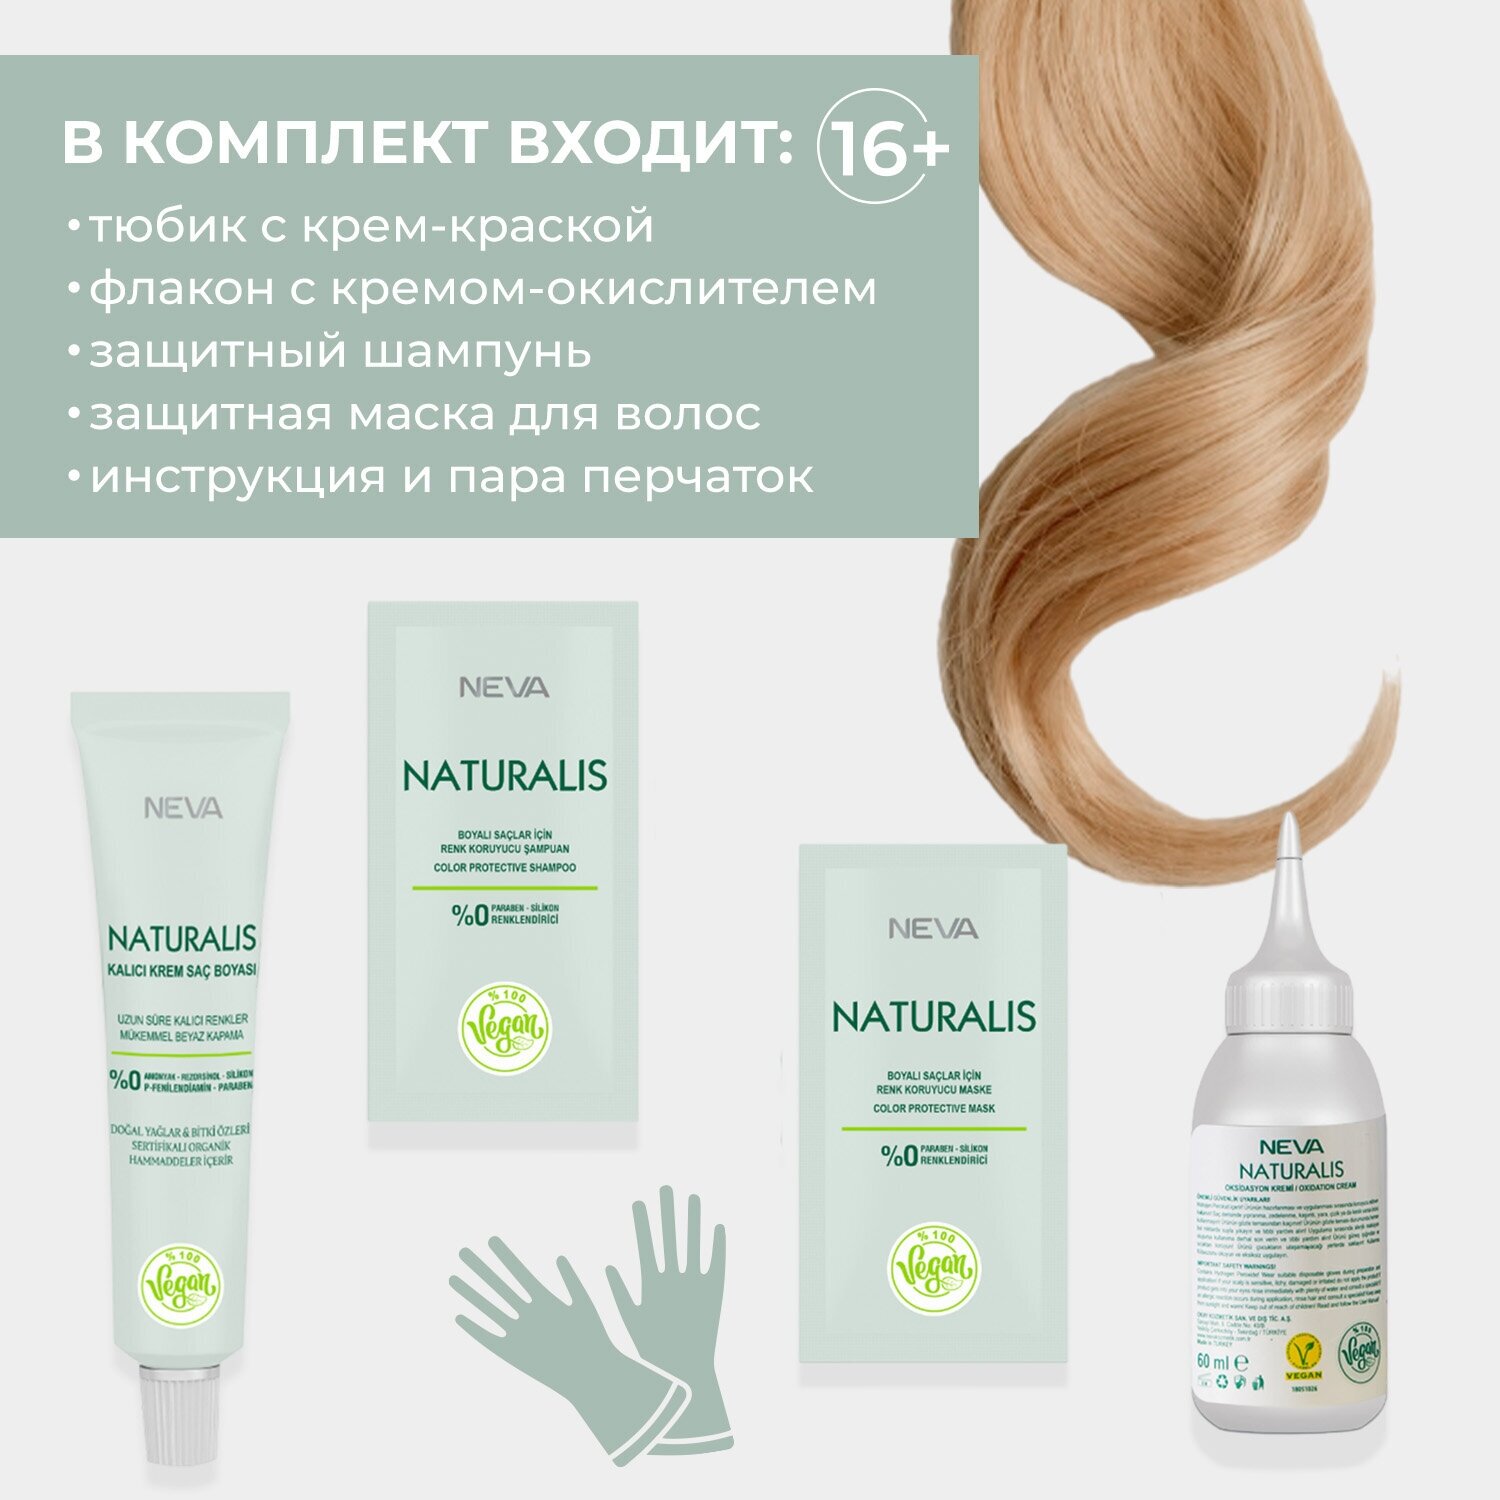 Крем-краска для волос Naturalis Vegan без аммиака № 7.7 Карамель Okay Kozmetik san. ve dis tic. A.S - фото №6